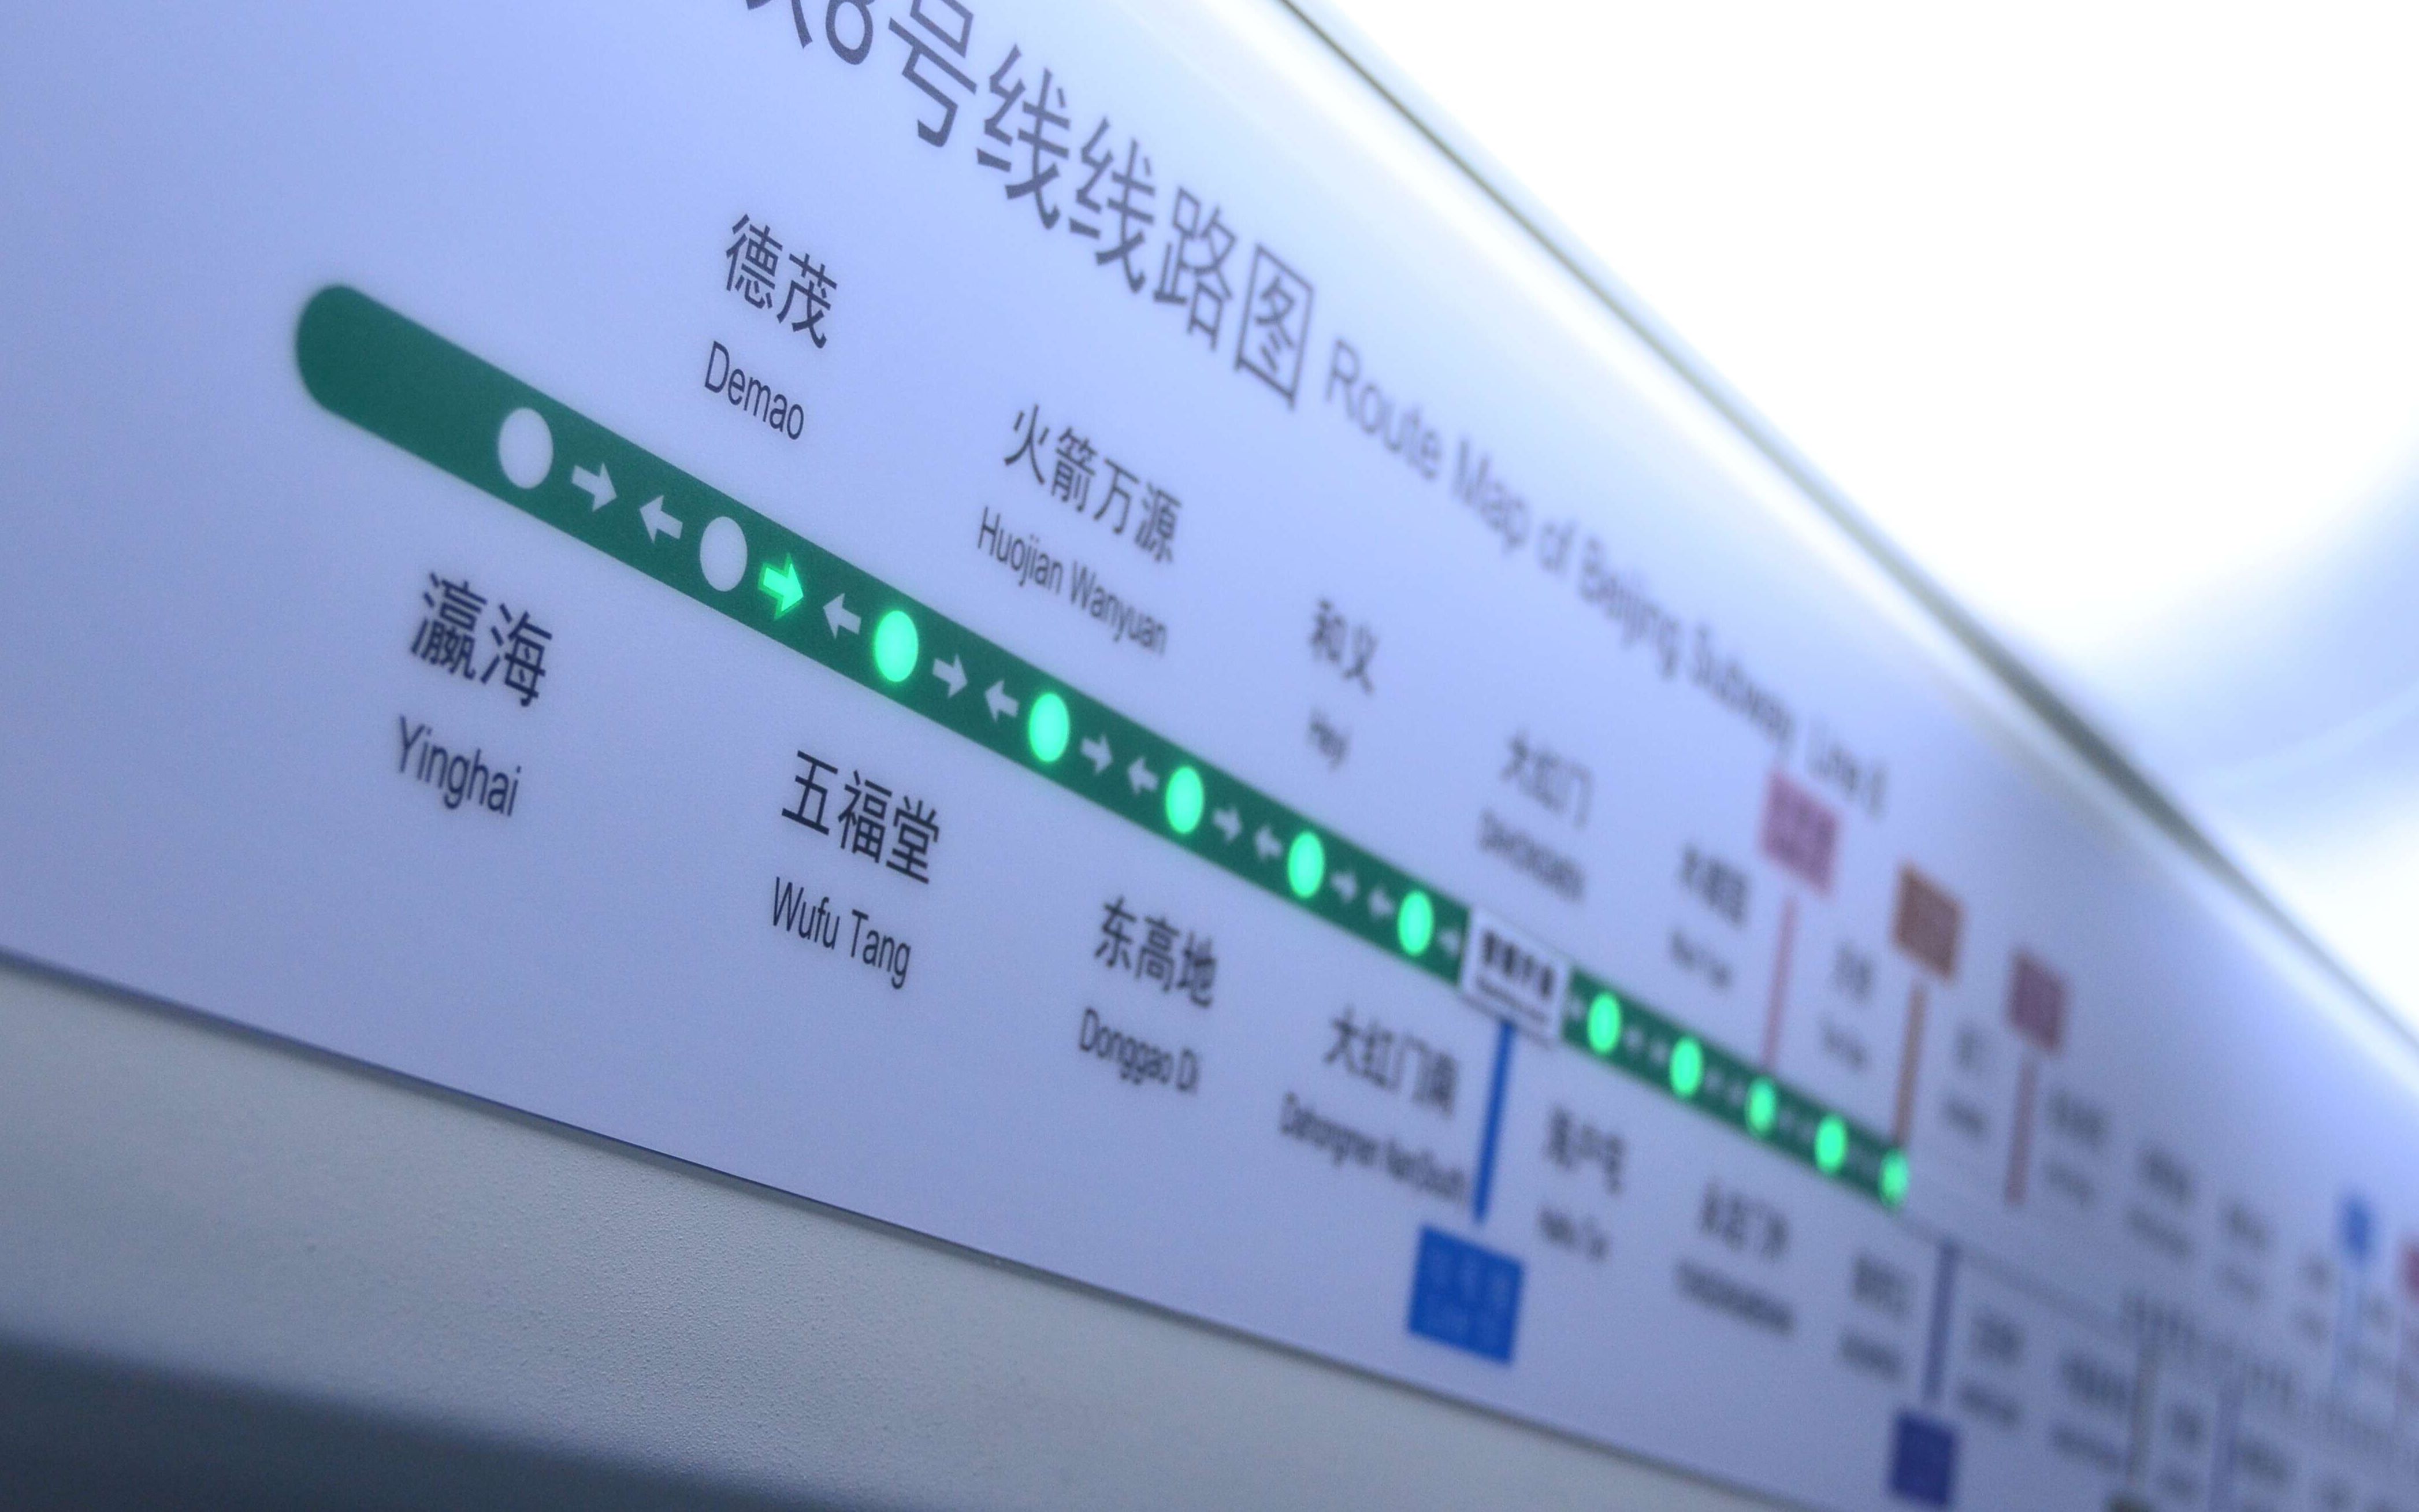 瀛海地铁8号线线路图图片